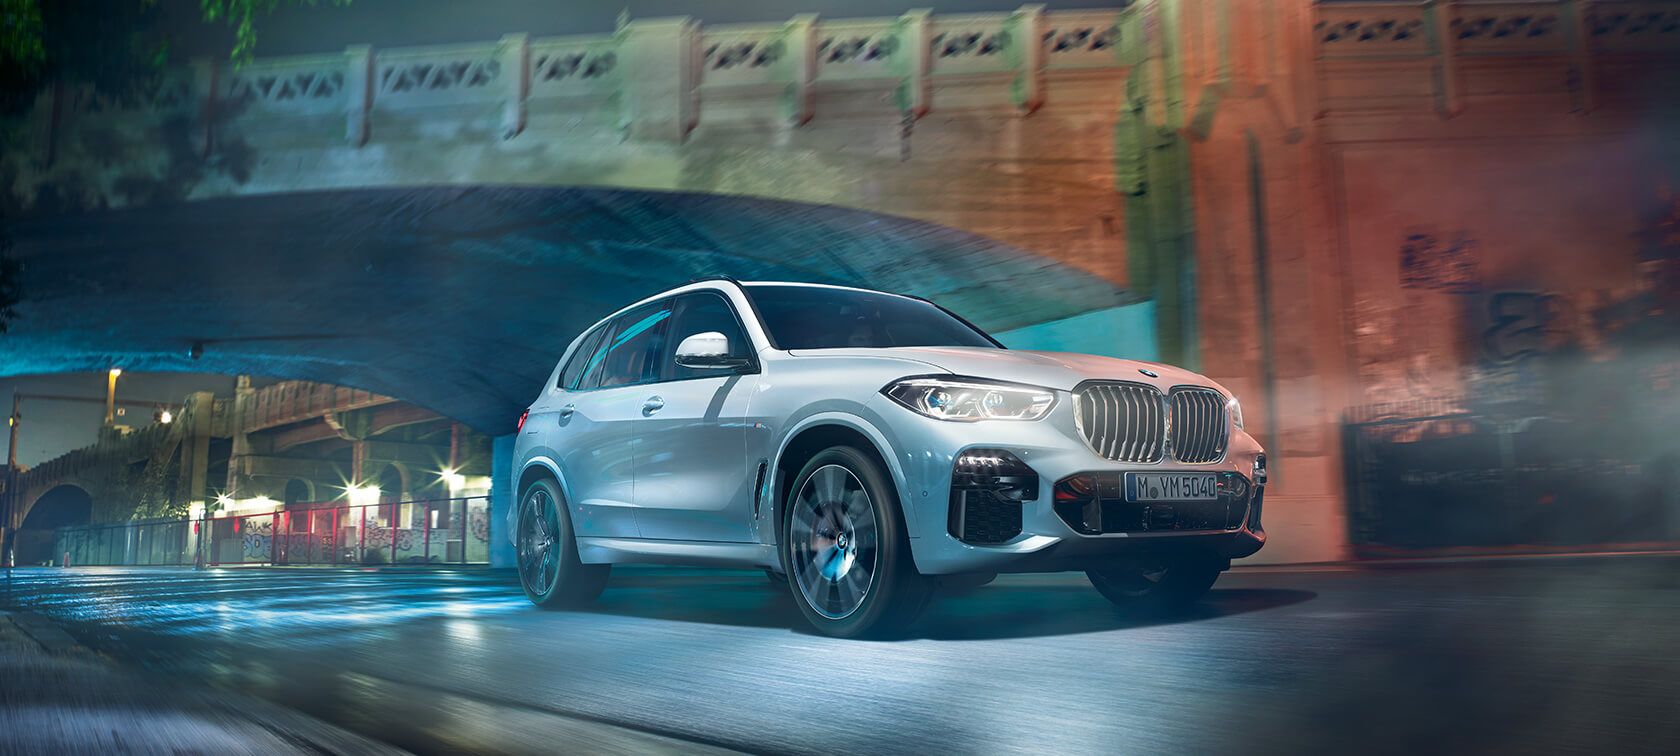 Harga BMW X5 Terbaru, Spesifikasi dan Interior 2022!